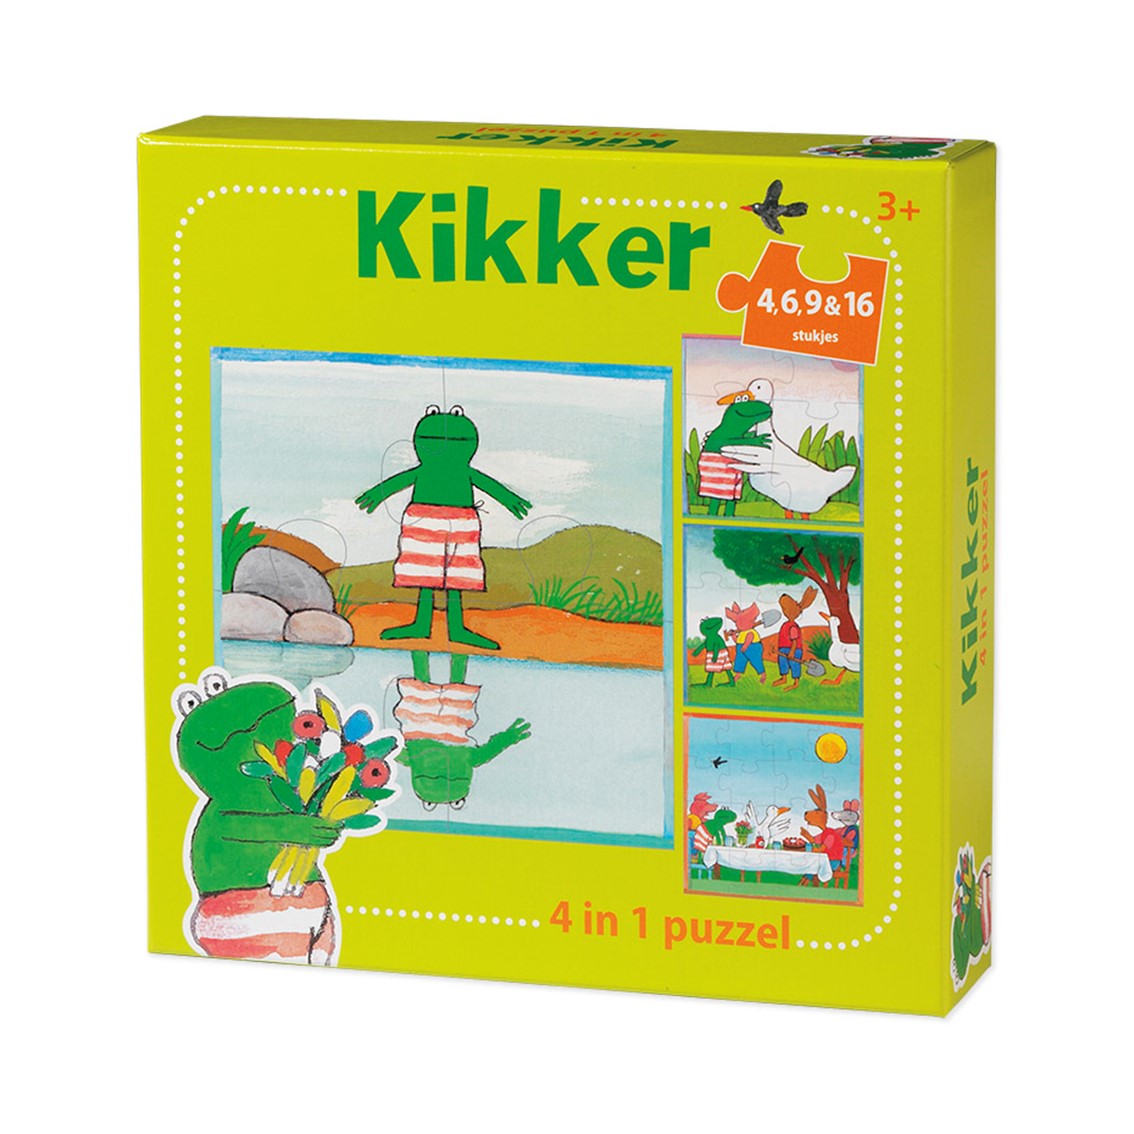 Kikker - 4 in 1 puzzel